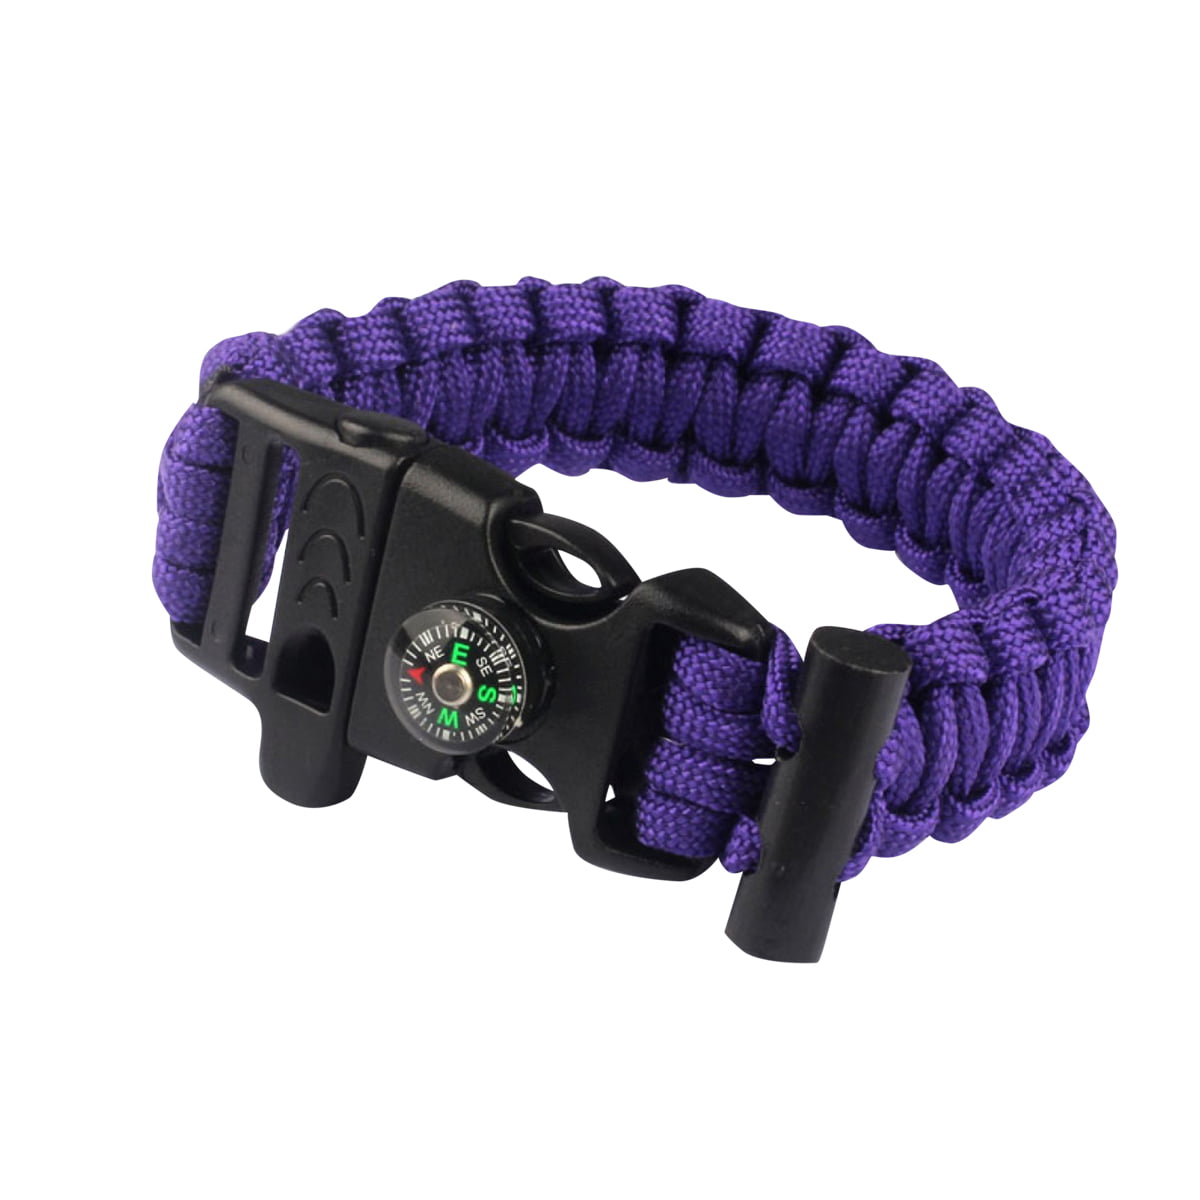 Women's Paracord Outdoor Skullz Survival Whistle Bracelet-OD Purple Camo 